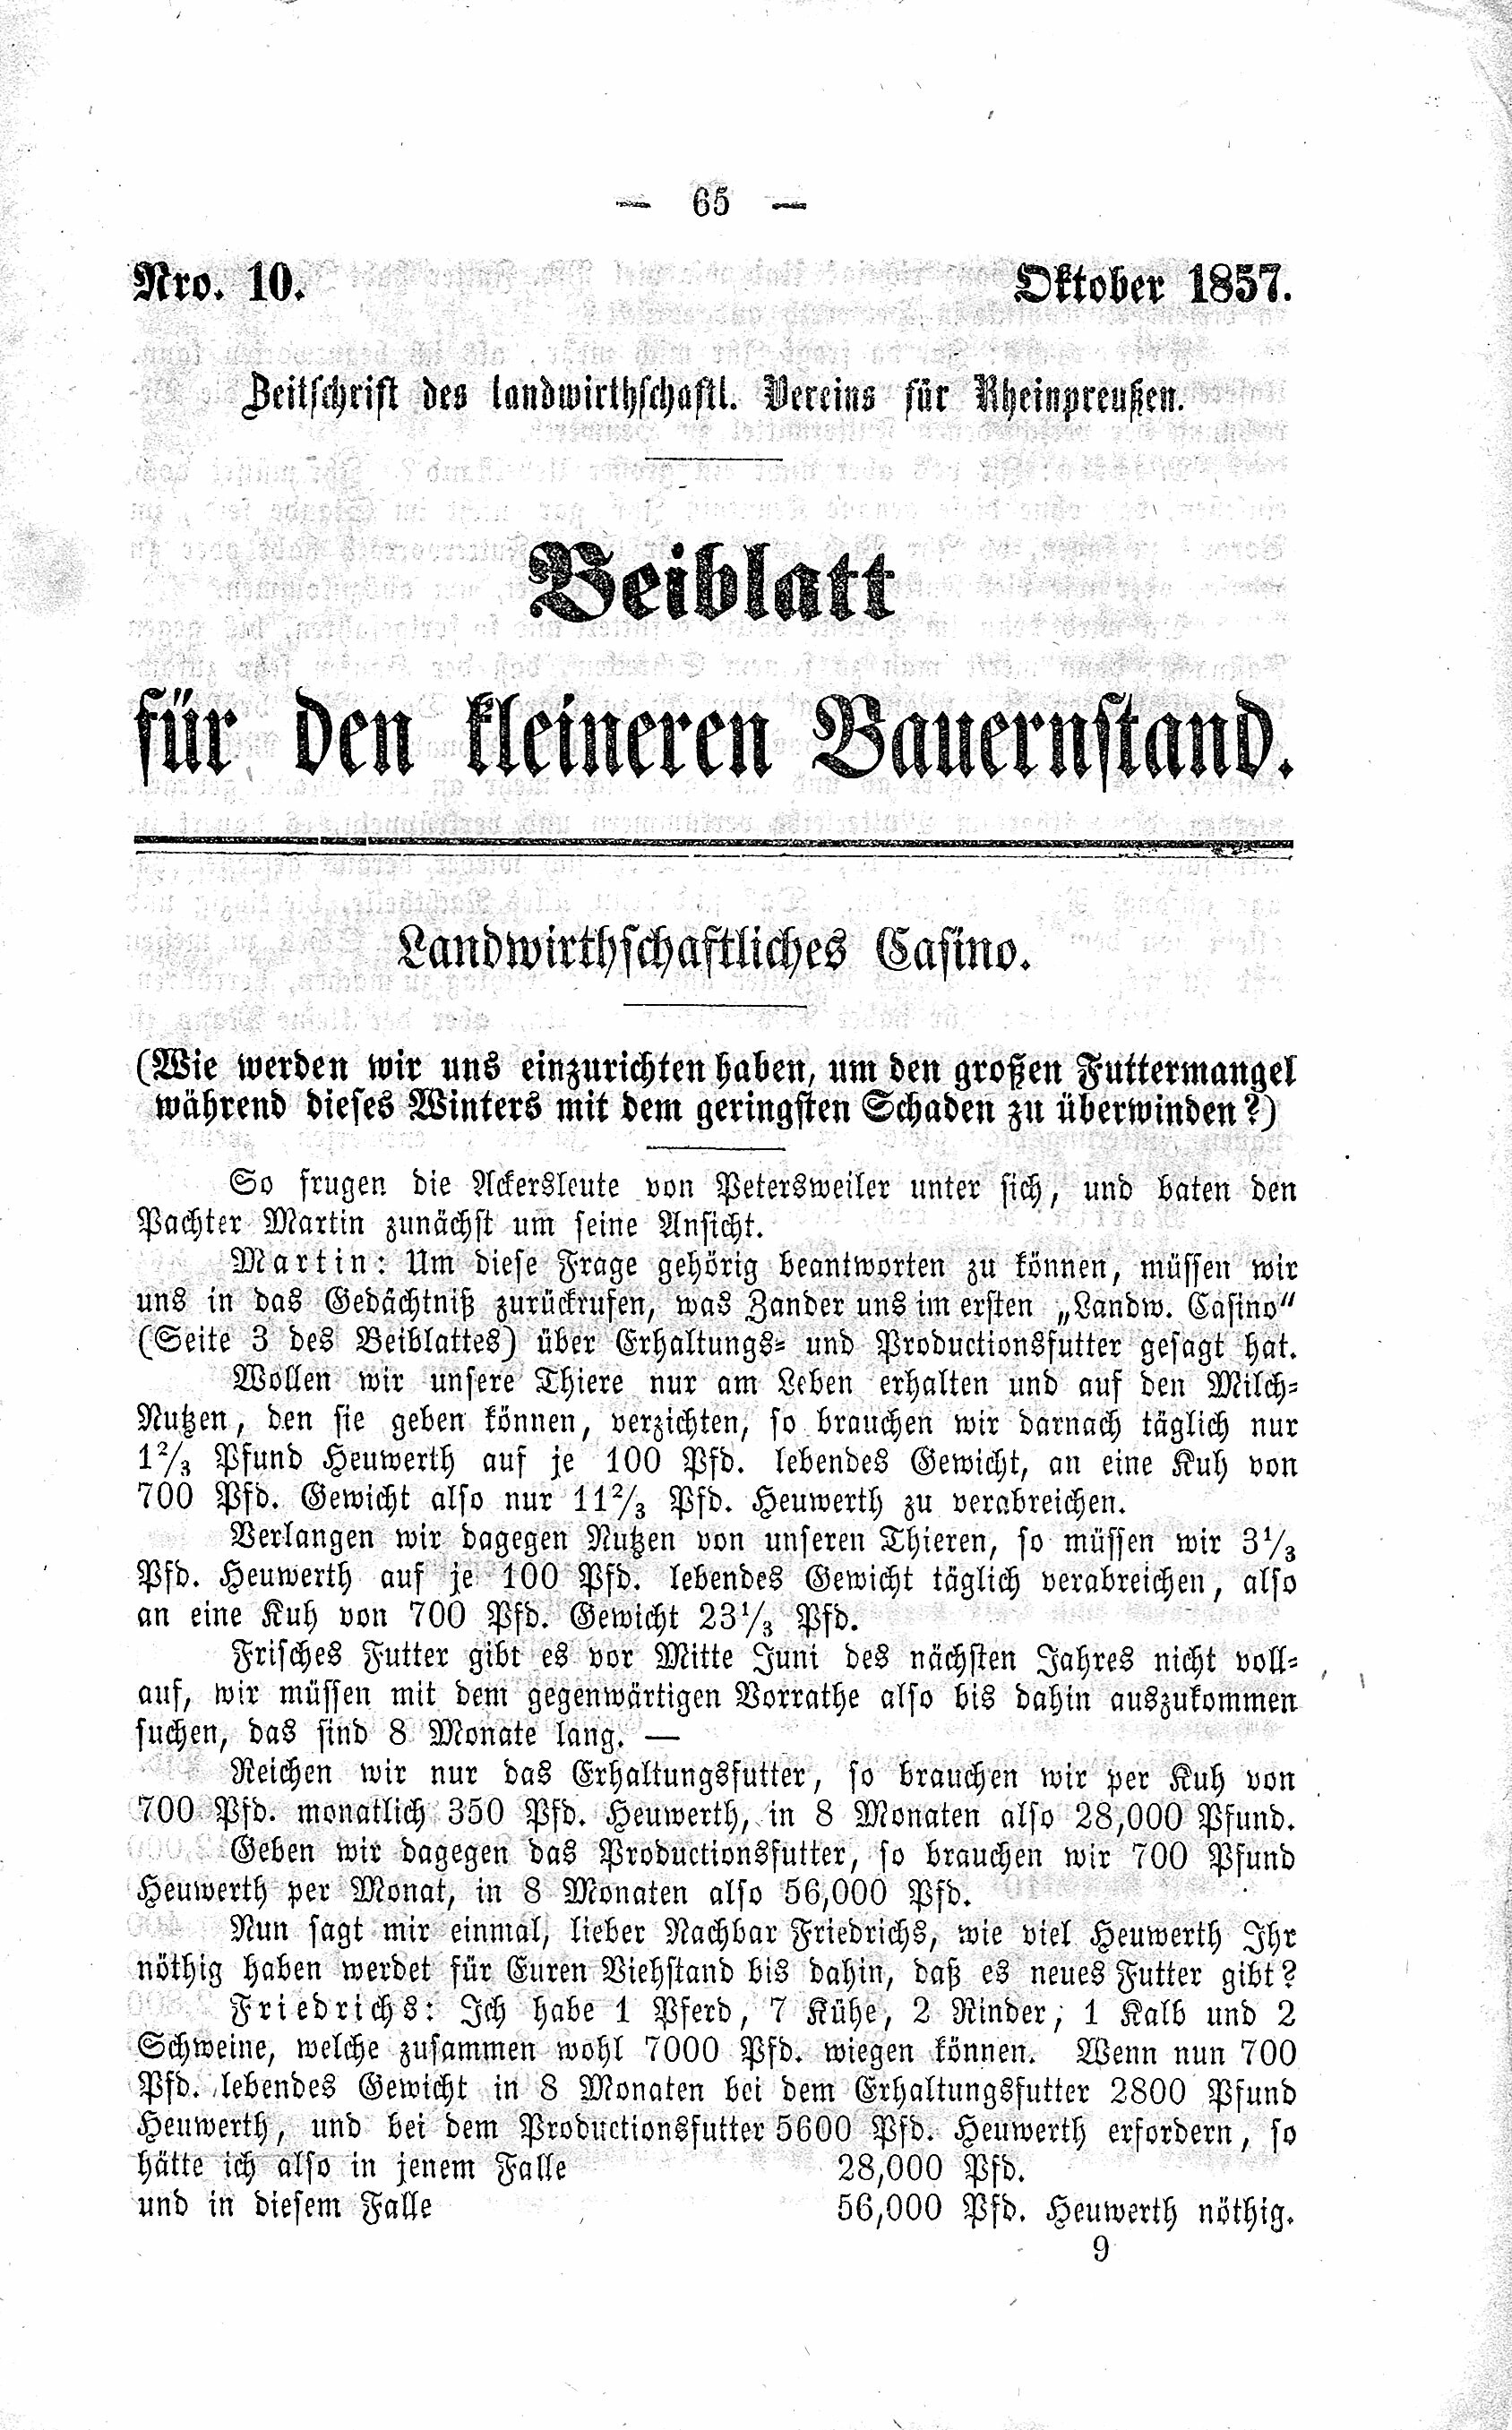 Beiblatt für den kleinen Bauernstand Oktober 1857 (Volkskunde- und Freilichtmuseum Roscheider Hof CC0)